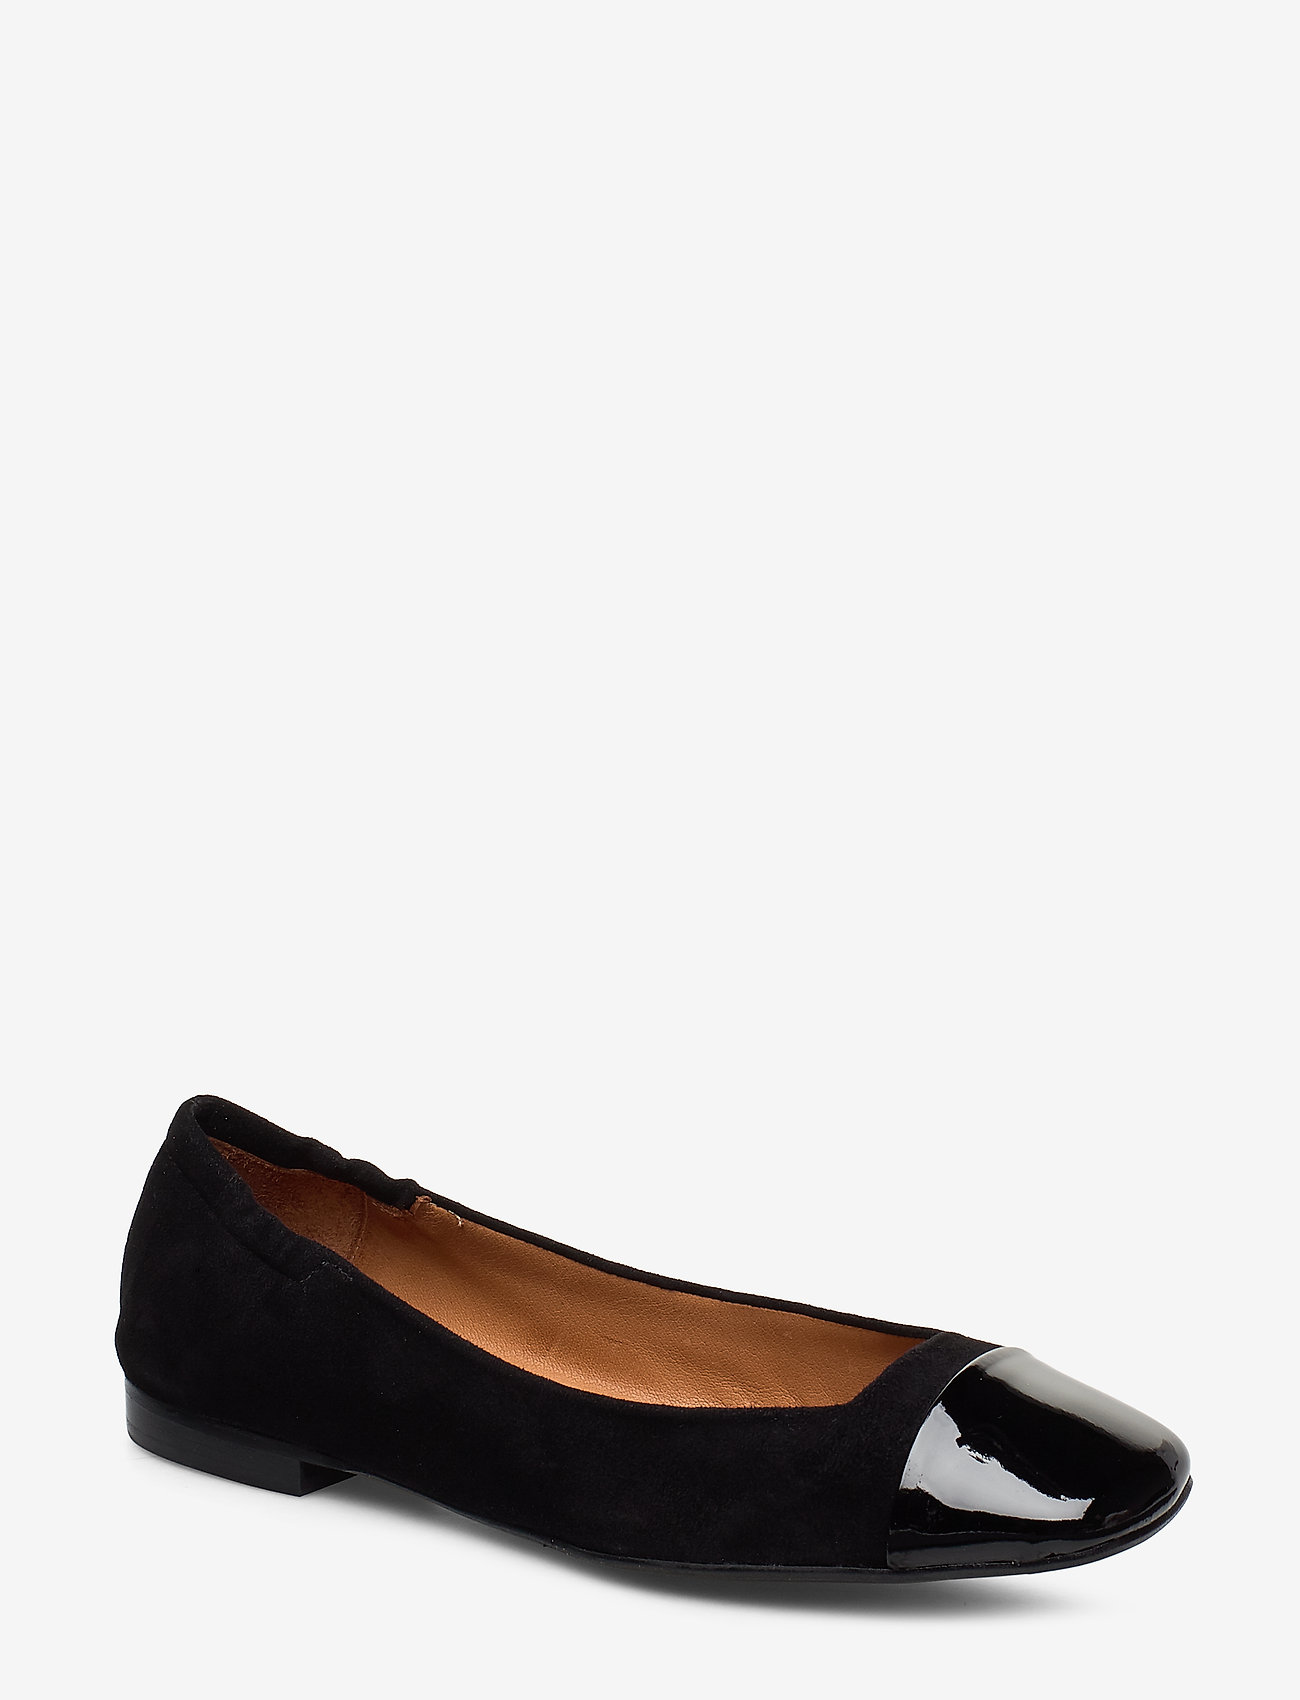 Shoes 4531 (Black Patent/black Suede 